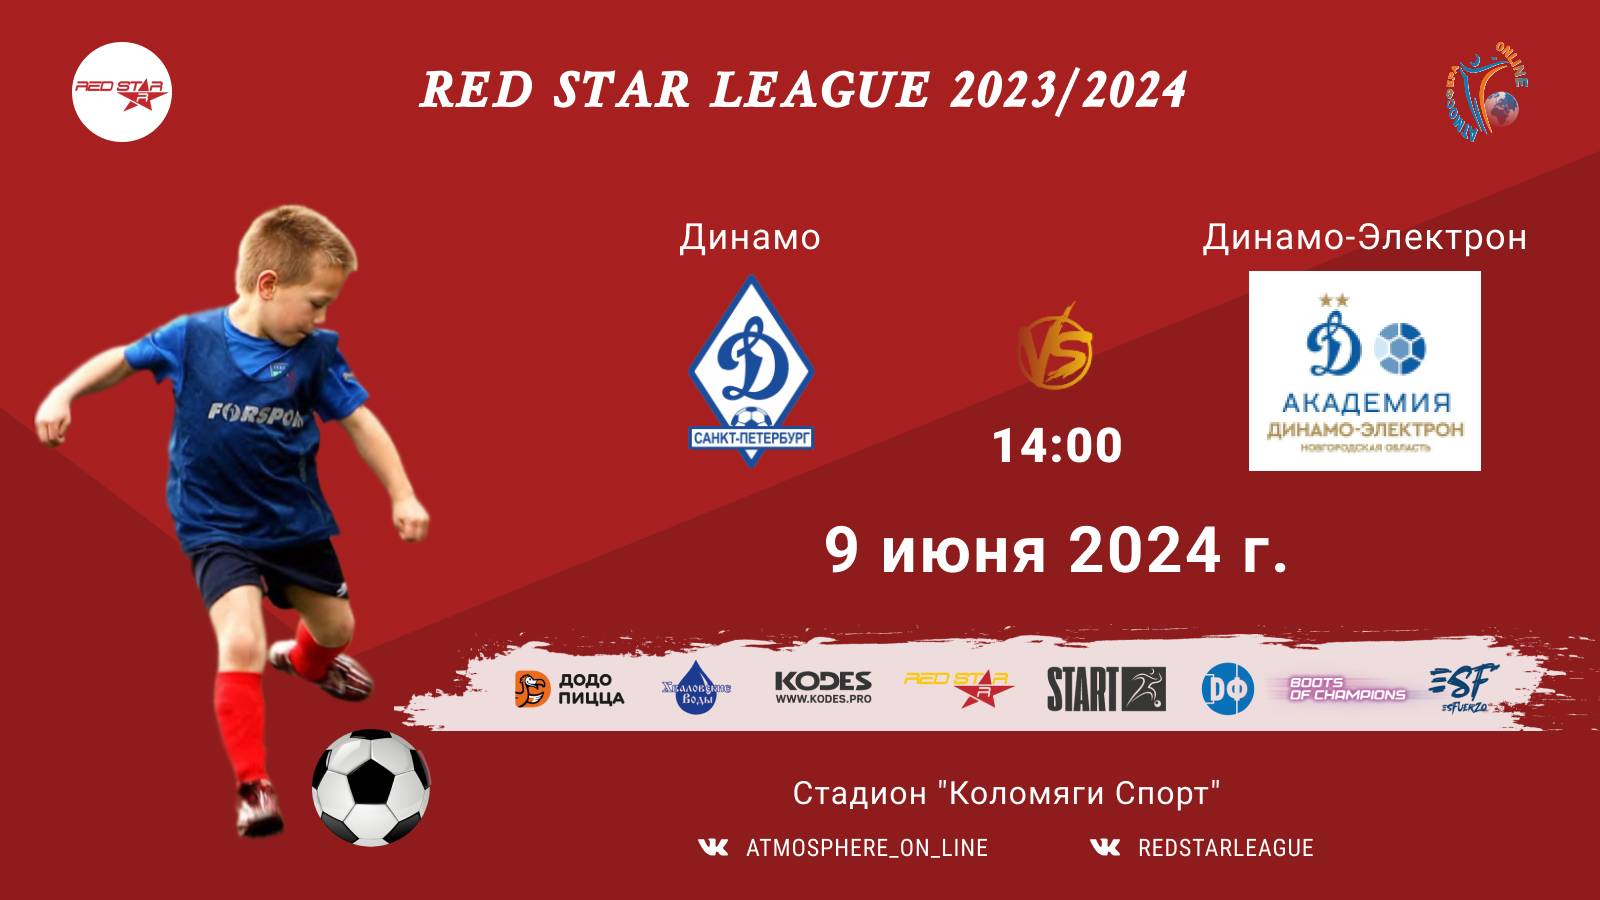 ФК "Динамо" - ФК "Динамо-Электрон"/Red Star League, 09-06-2024 14:00